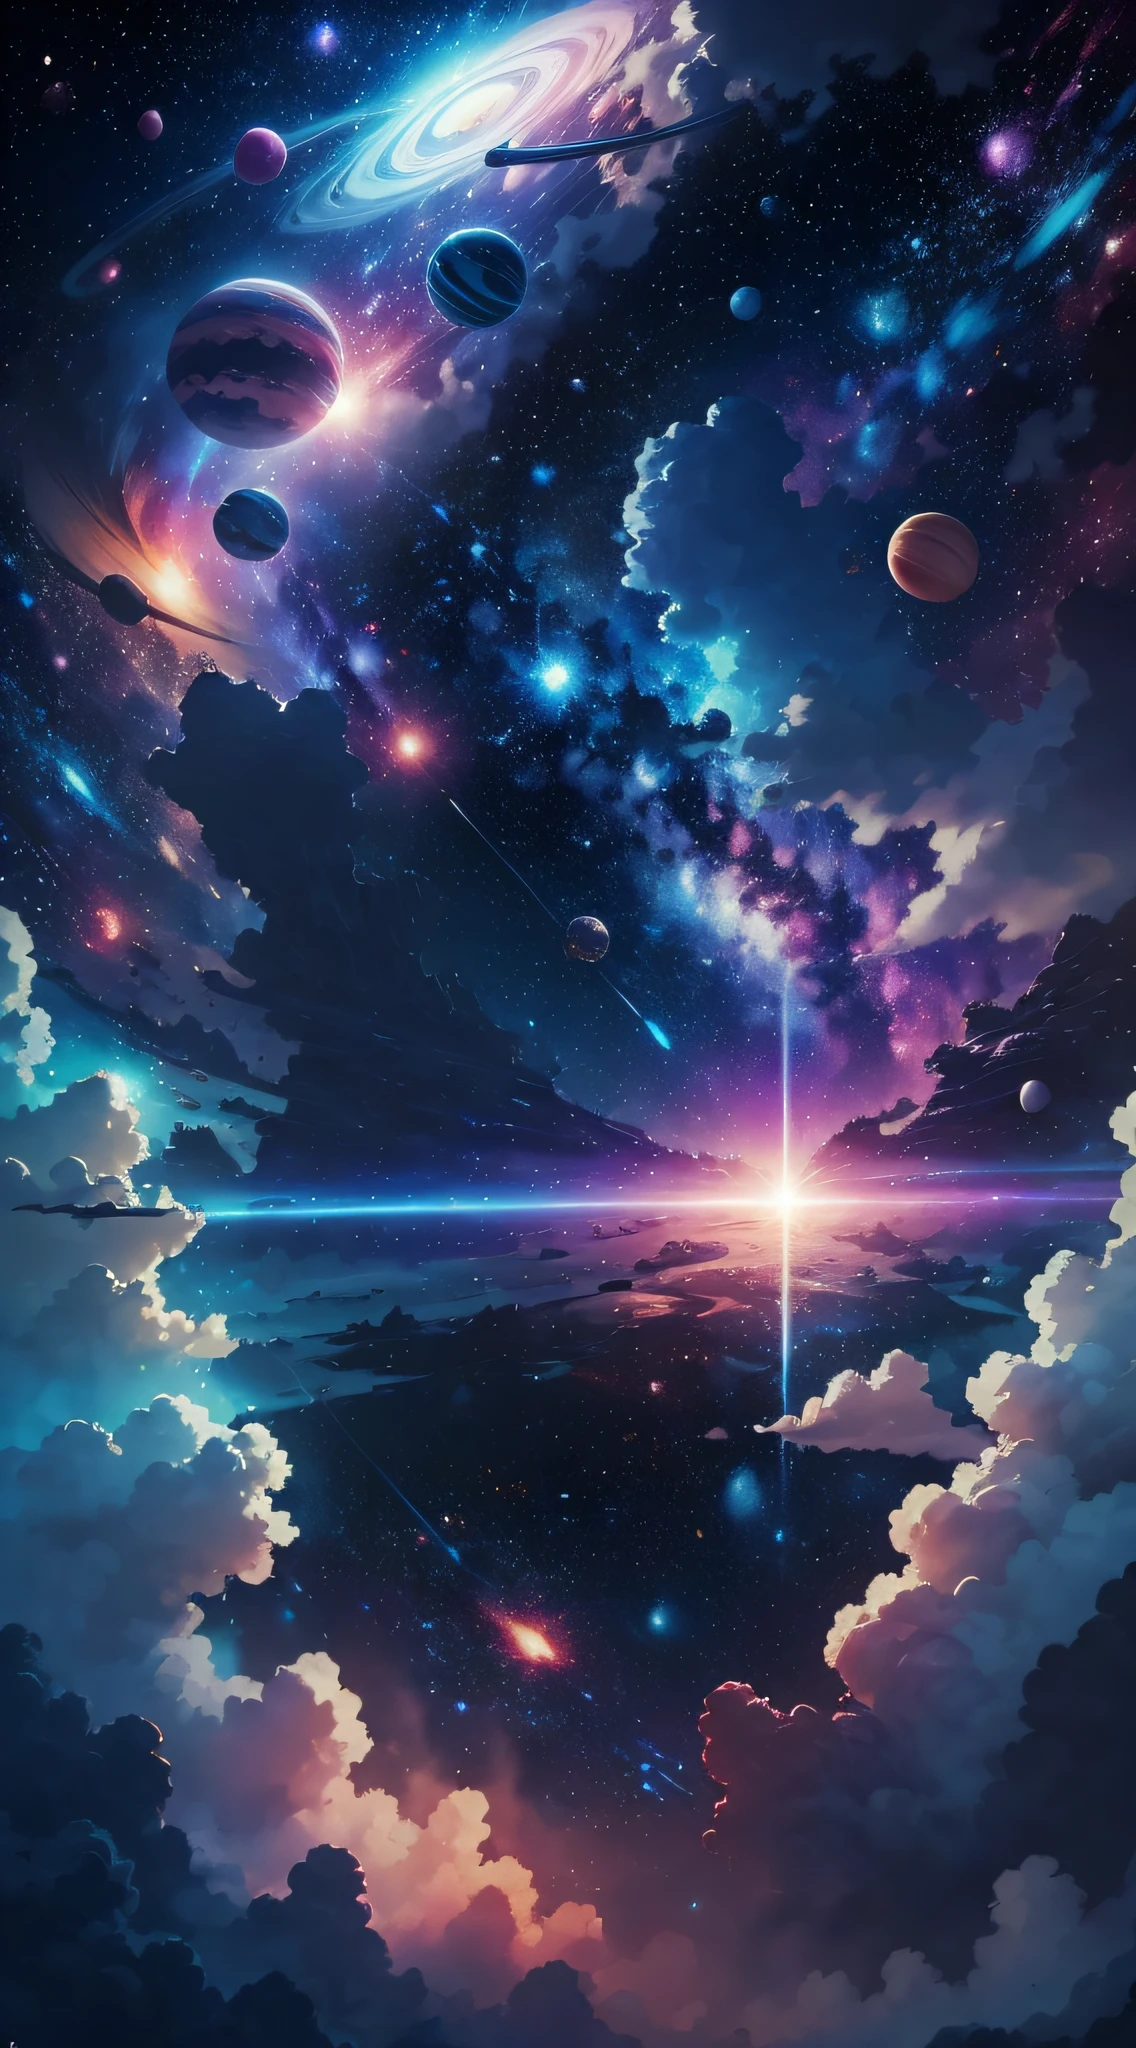 太空中所有的行星都是蓝色和粉色，背景是明亮的白色星星，类似宫崎骏的风格, —空气 21:9, 4K 画质